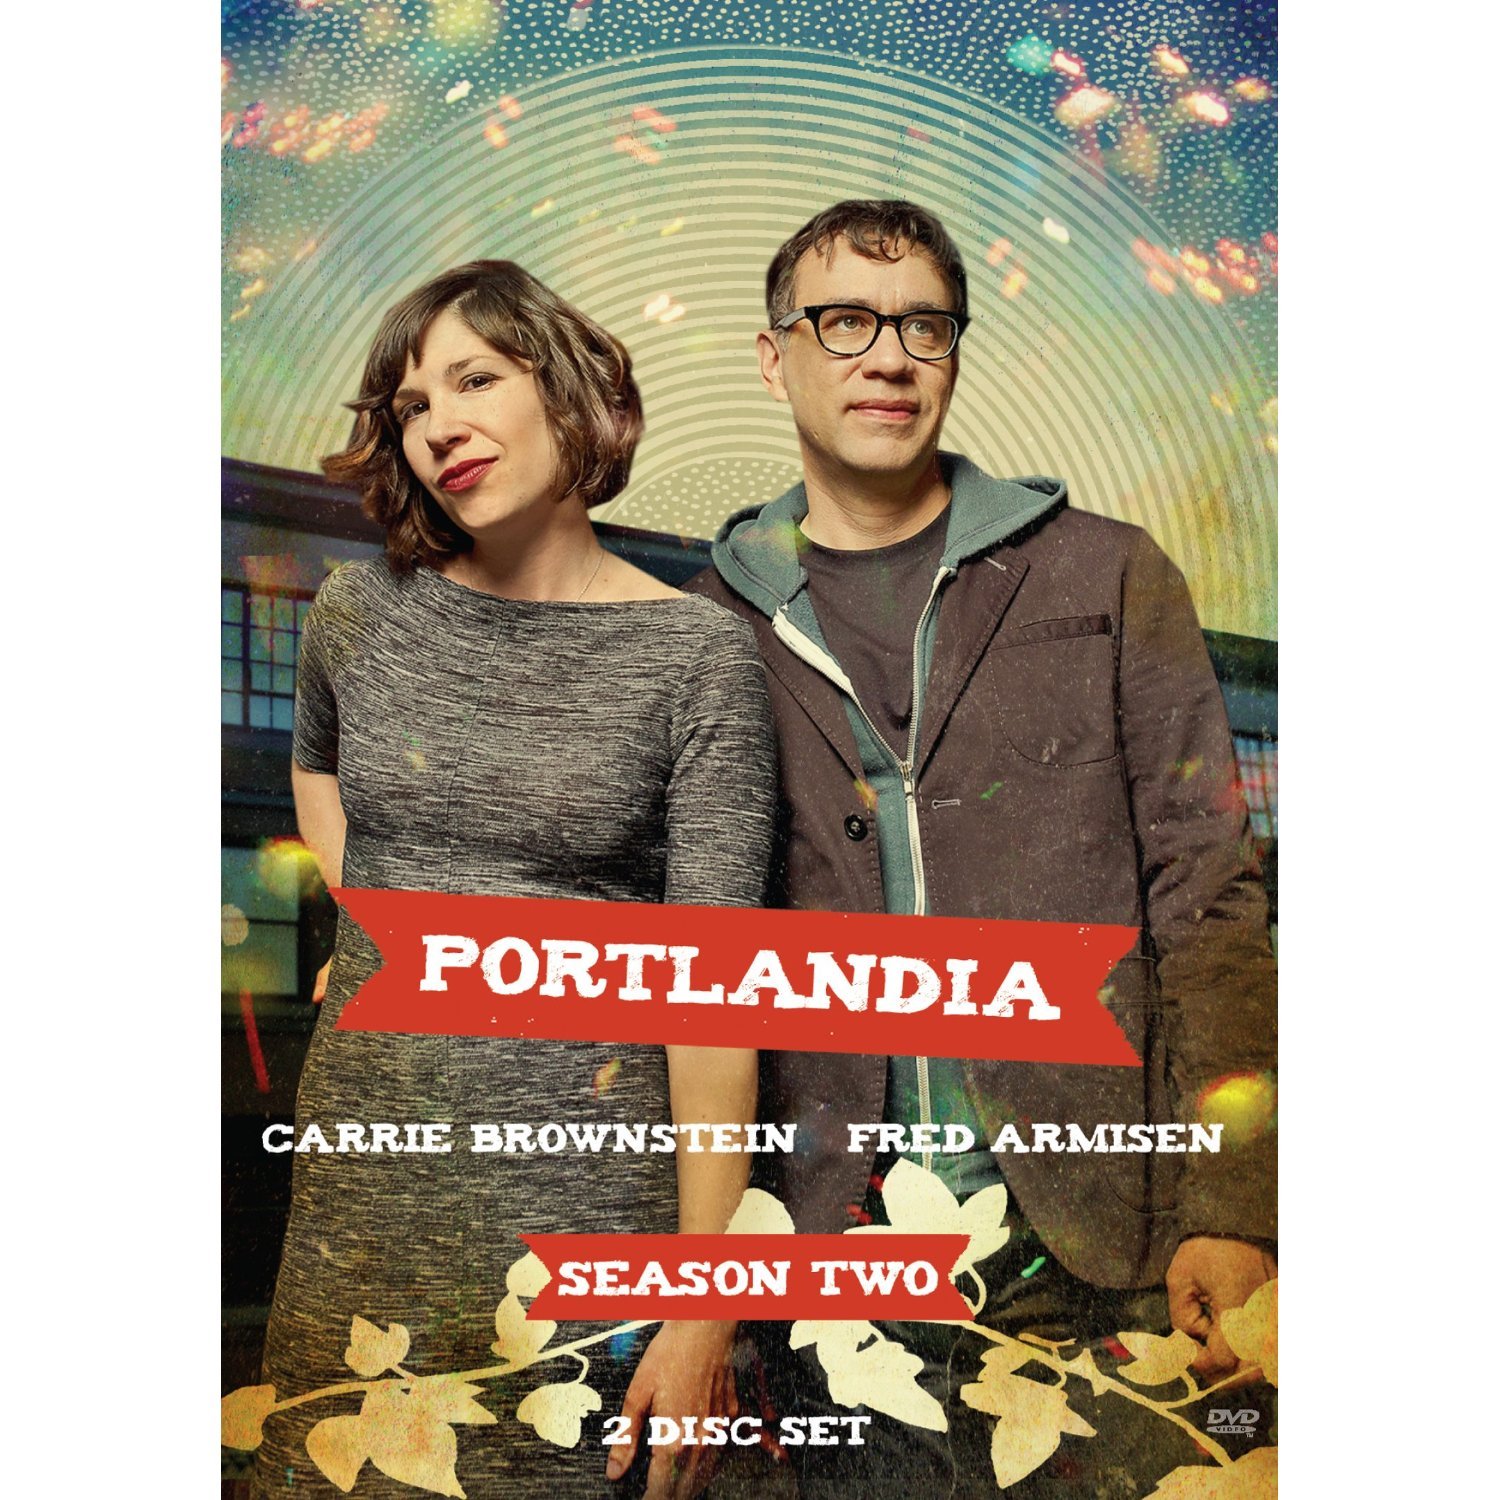 Portlandia Season 3